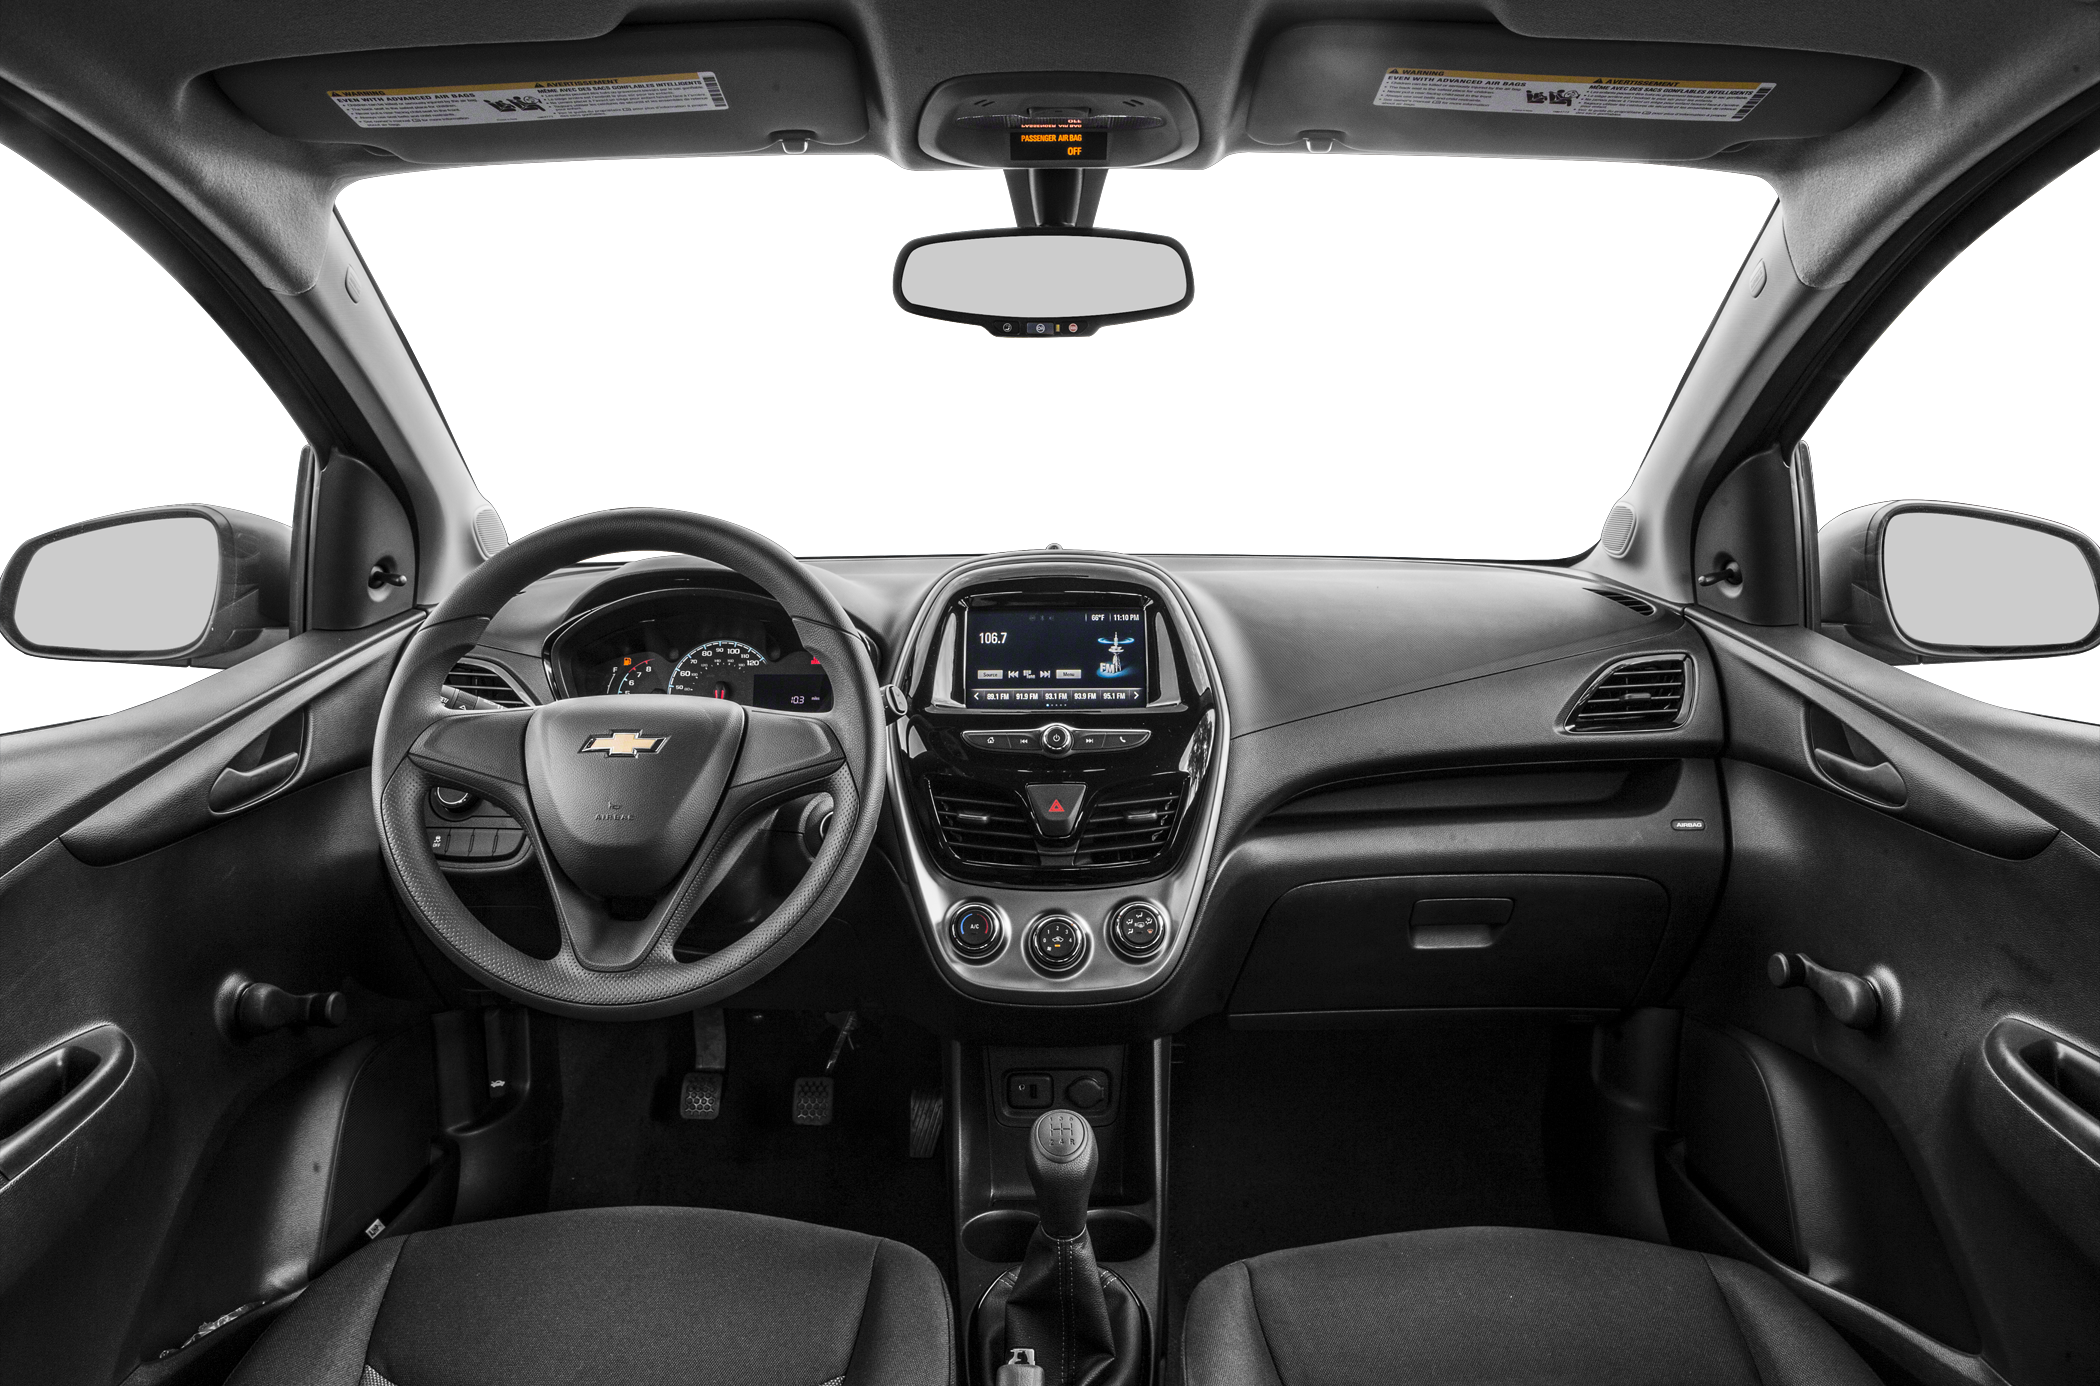 2018 Chevrolet Spark